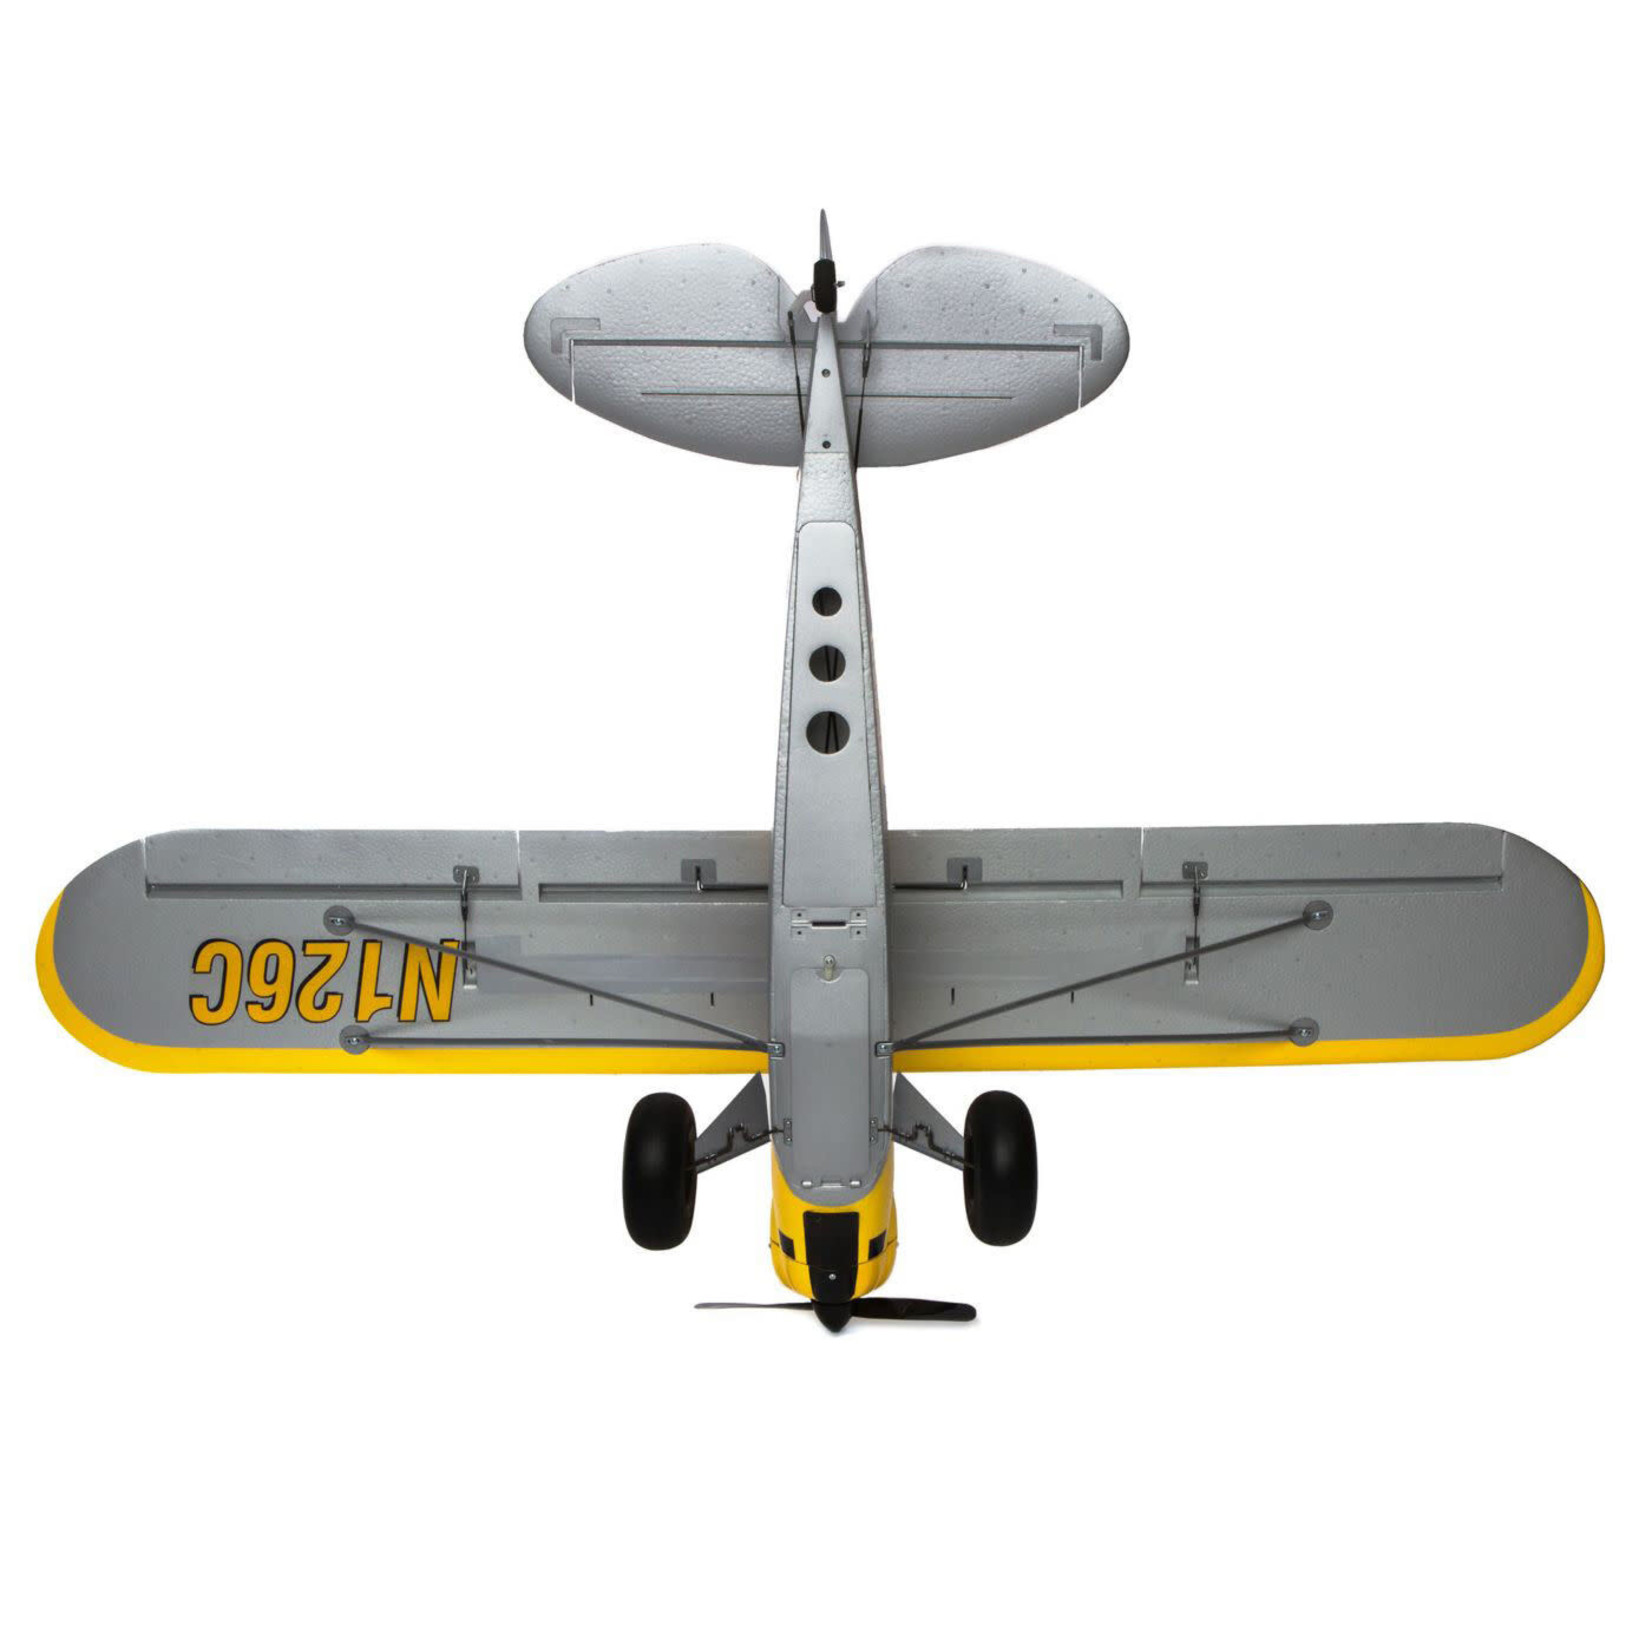 HobbyZone HobbyZone Carbon Cub S 2 1.3m RTF Basic Electric Airplane (1300mm) w/SAFE Technology #HBZ320001